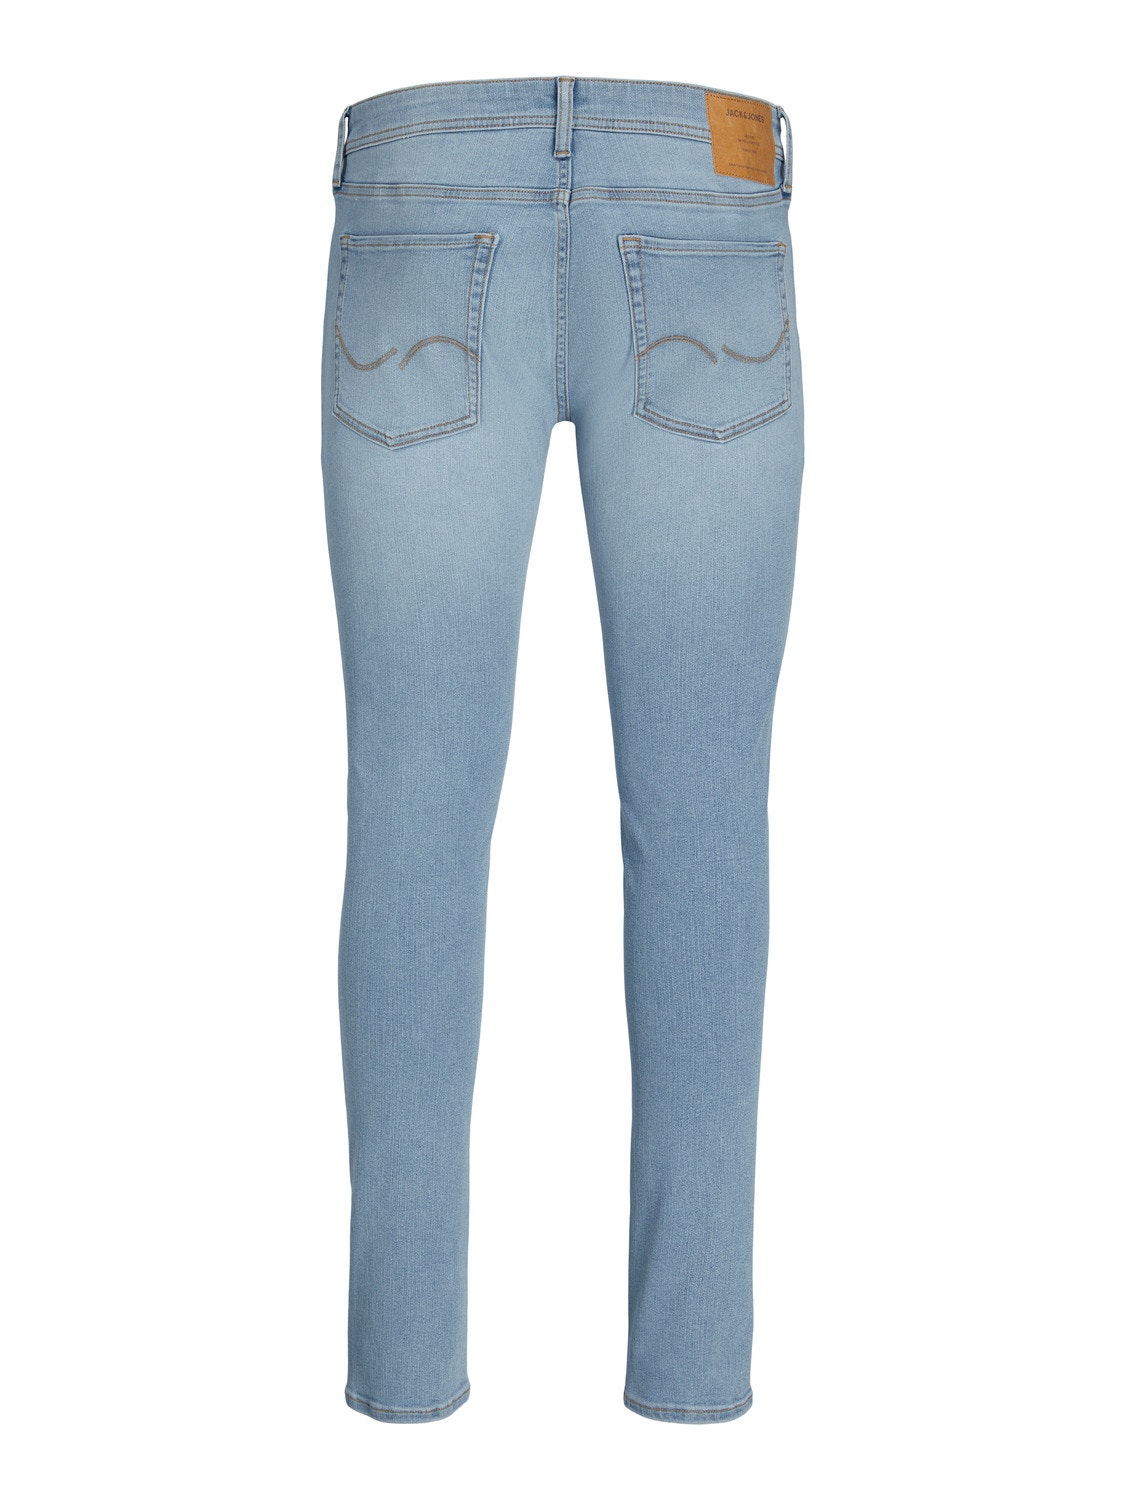 Jack & Jones JJILIAM JJORIGINAL MF 906 Skinny fit jeans -Blue Denim - 12250142